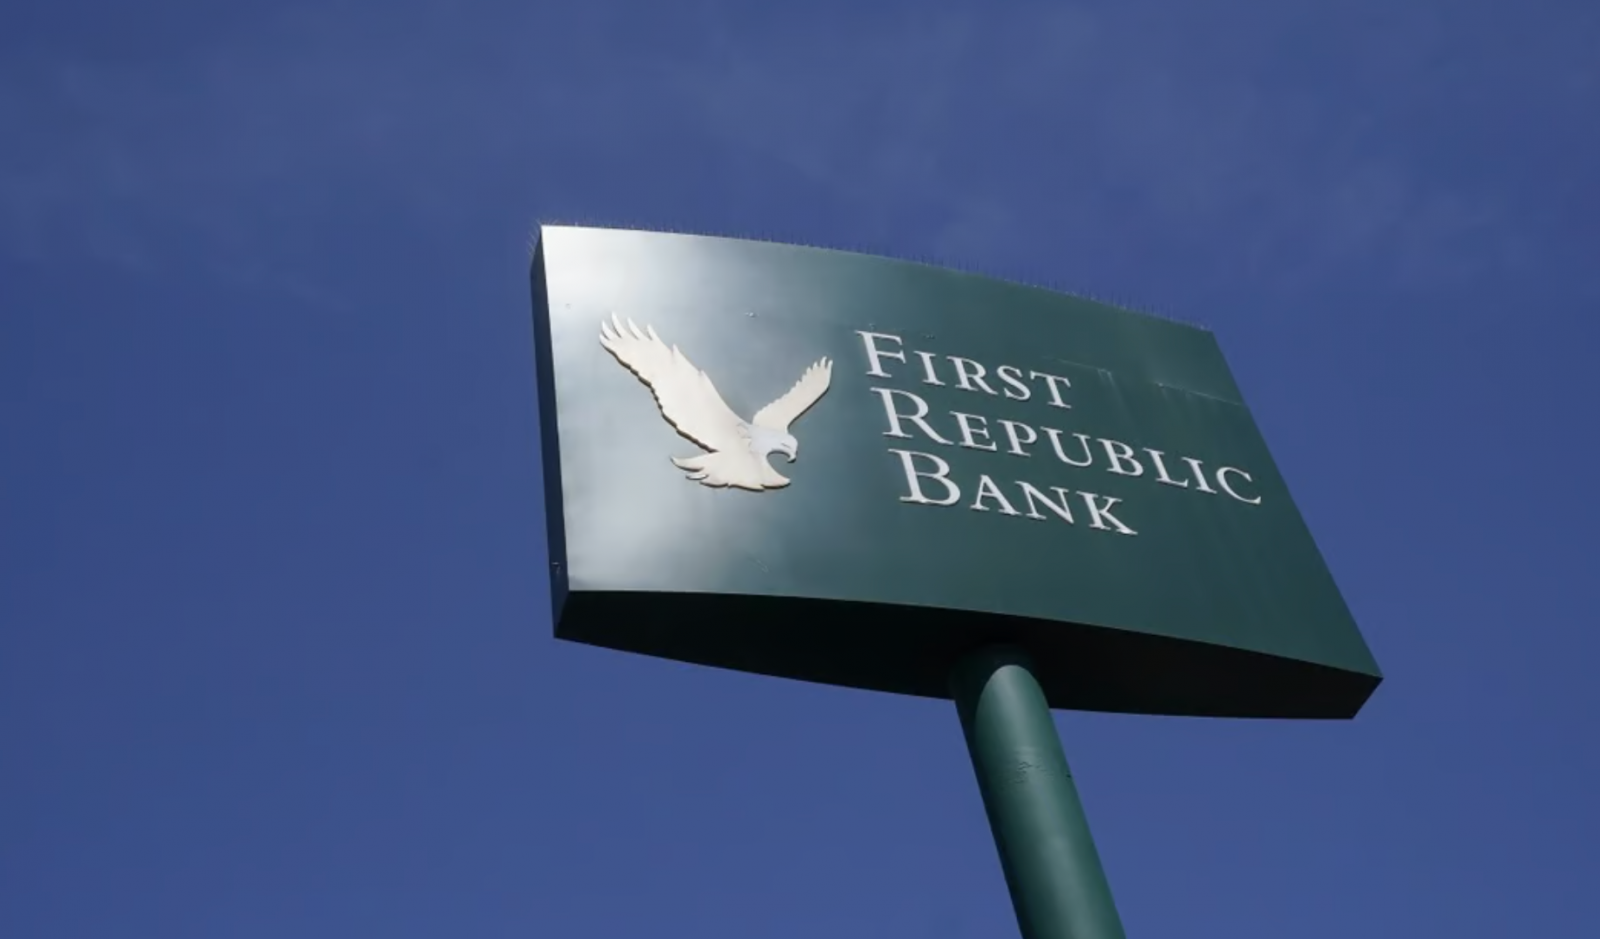 Tính đến ngày 13/4, First Republic Bank có khoảng 229 tỷ USD tổng tài sản và 104 tỷ USD tổng tiền gửi